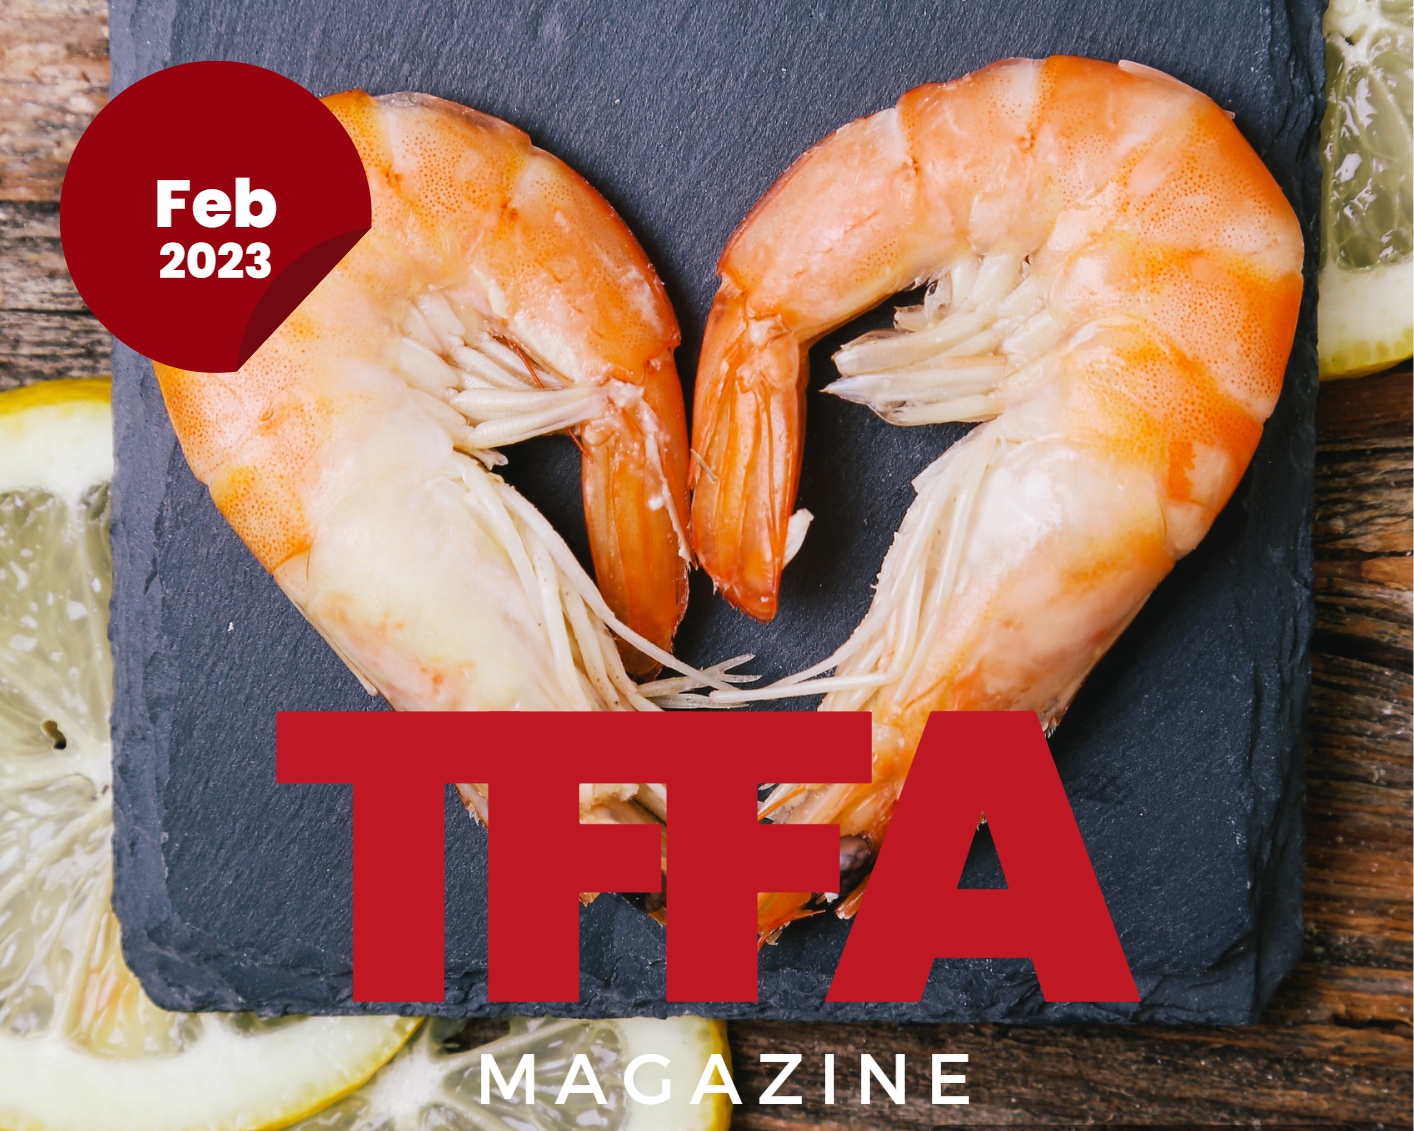 TFFA Magazine February 2023